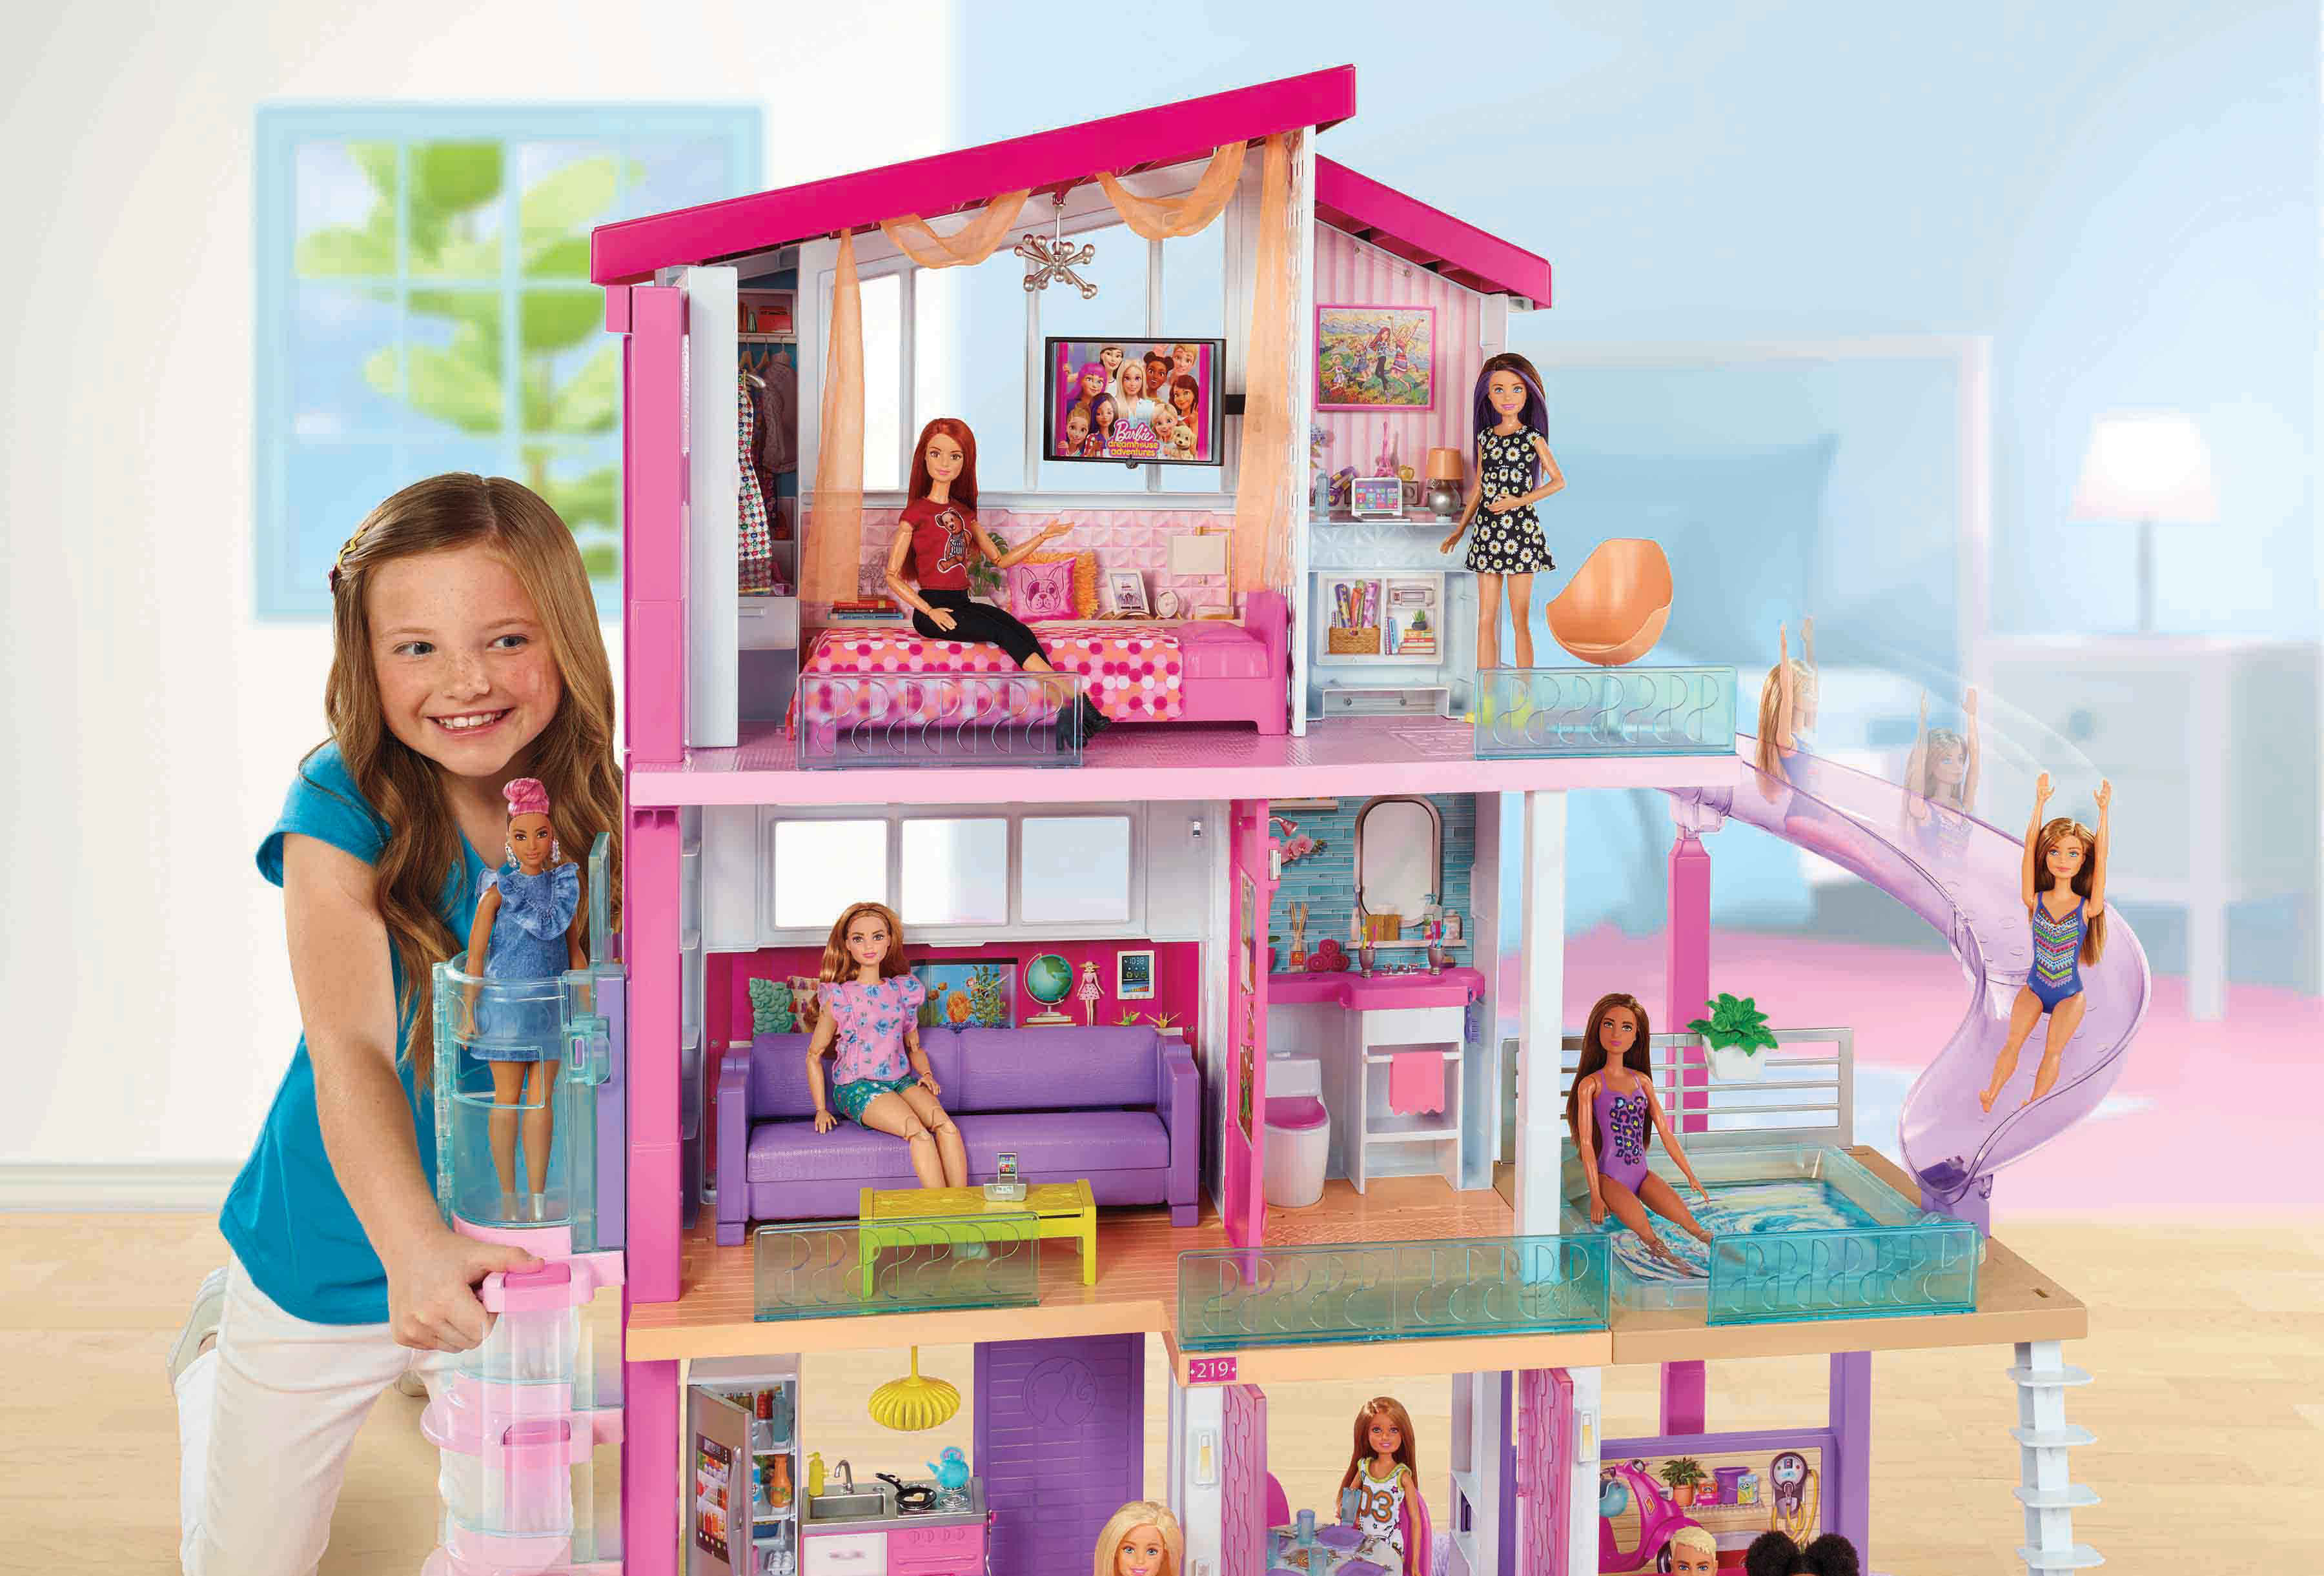 Барби дом 1. Барби Дрим Хаус 2018. Дом Барби Дрим Хаус. Домик для кукол Барби Дрим Хаус. Barbie дом мечты (68265).